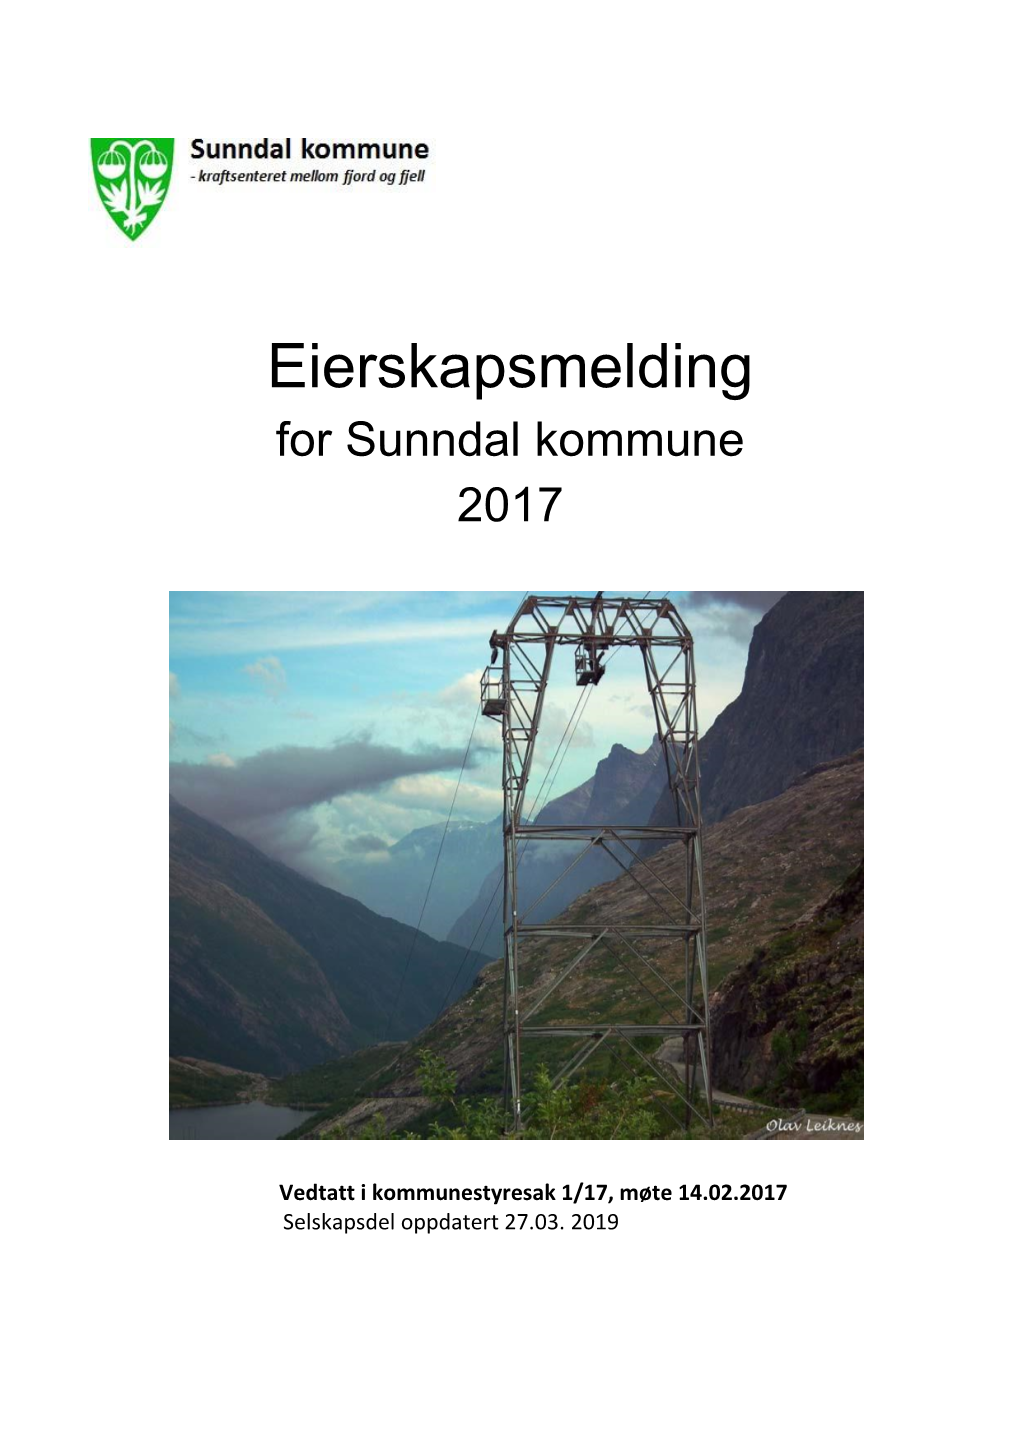 Eierskapsmelding for Sunndal Kommune 2017